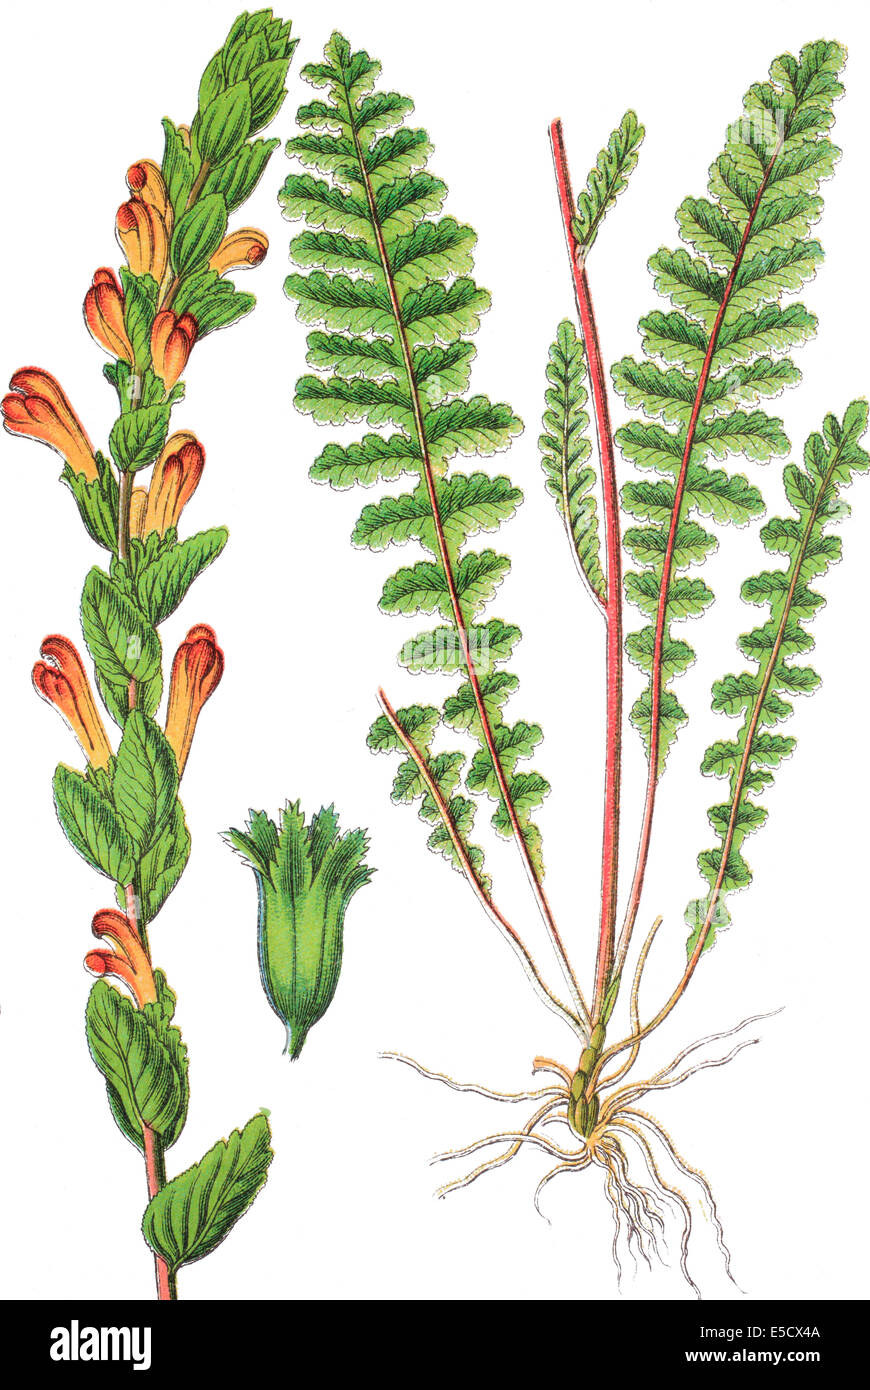 Pedicularis sceptrum-carolinum Stock Photo